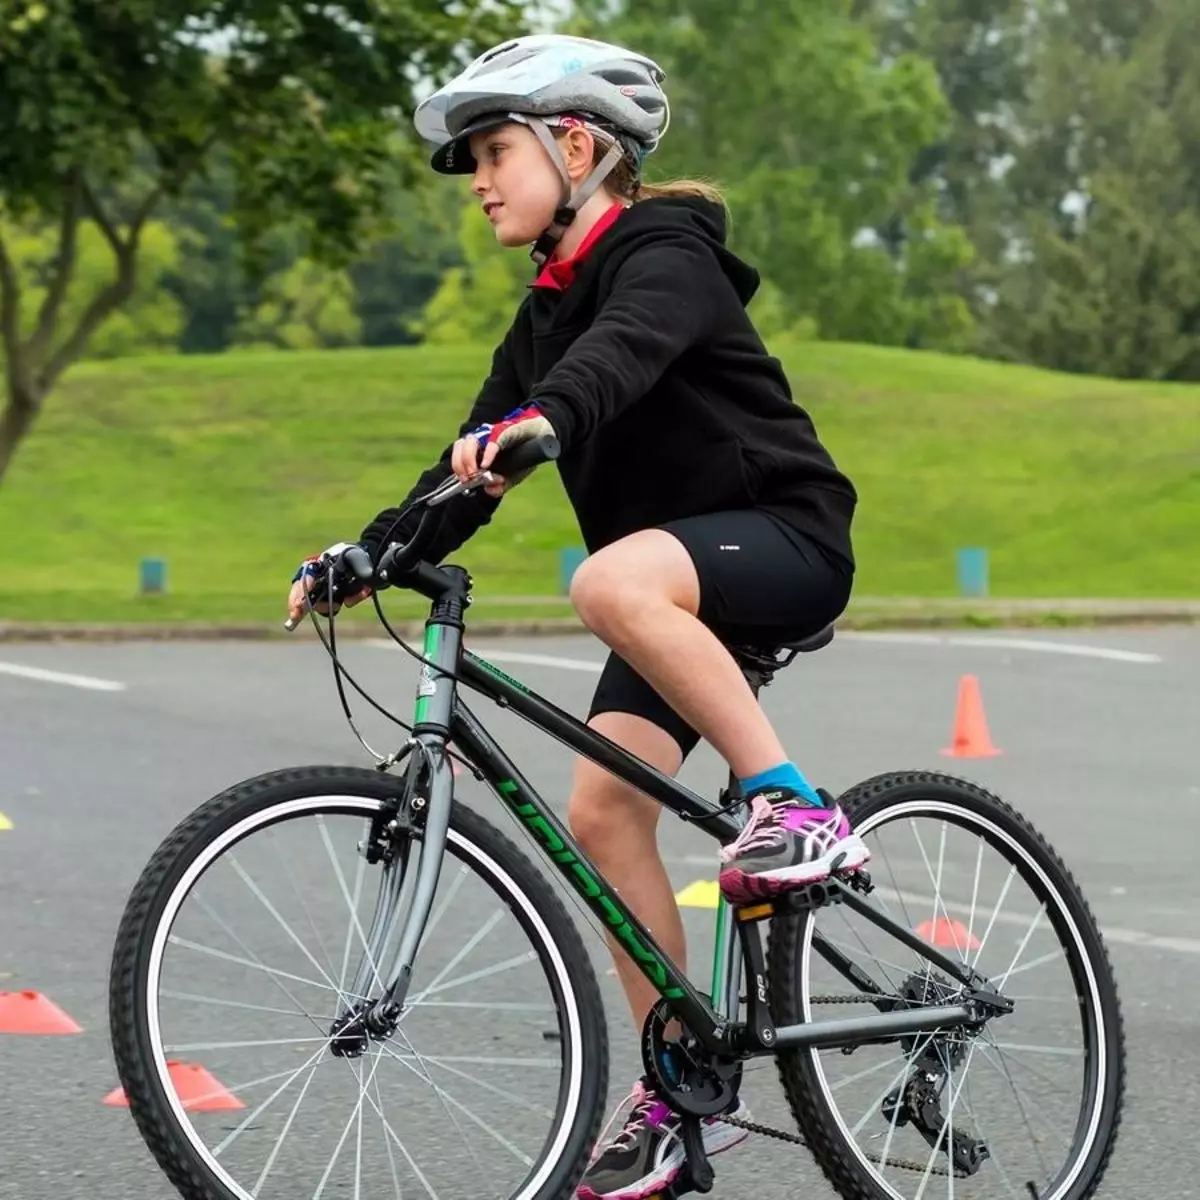 Bicycles zarokên ji bo zarokek 10 salî ne: Howawa ji bo kurikek ciwan û keçan bisiklêtek hilbijêrin? Meriv çawa dizera wheelê hilbijêrin? Modelên dengdanê 8589_17